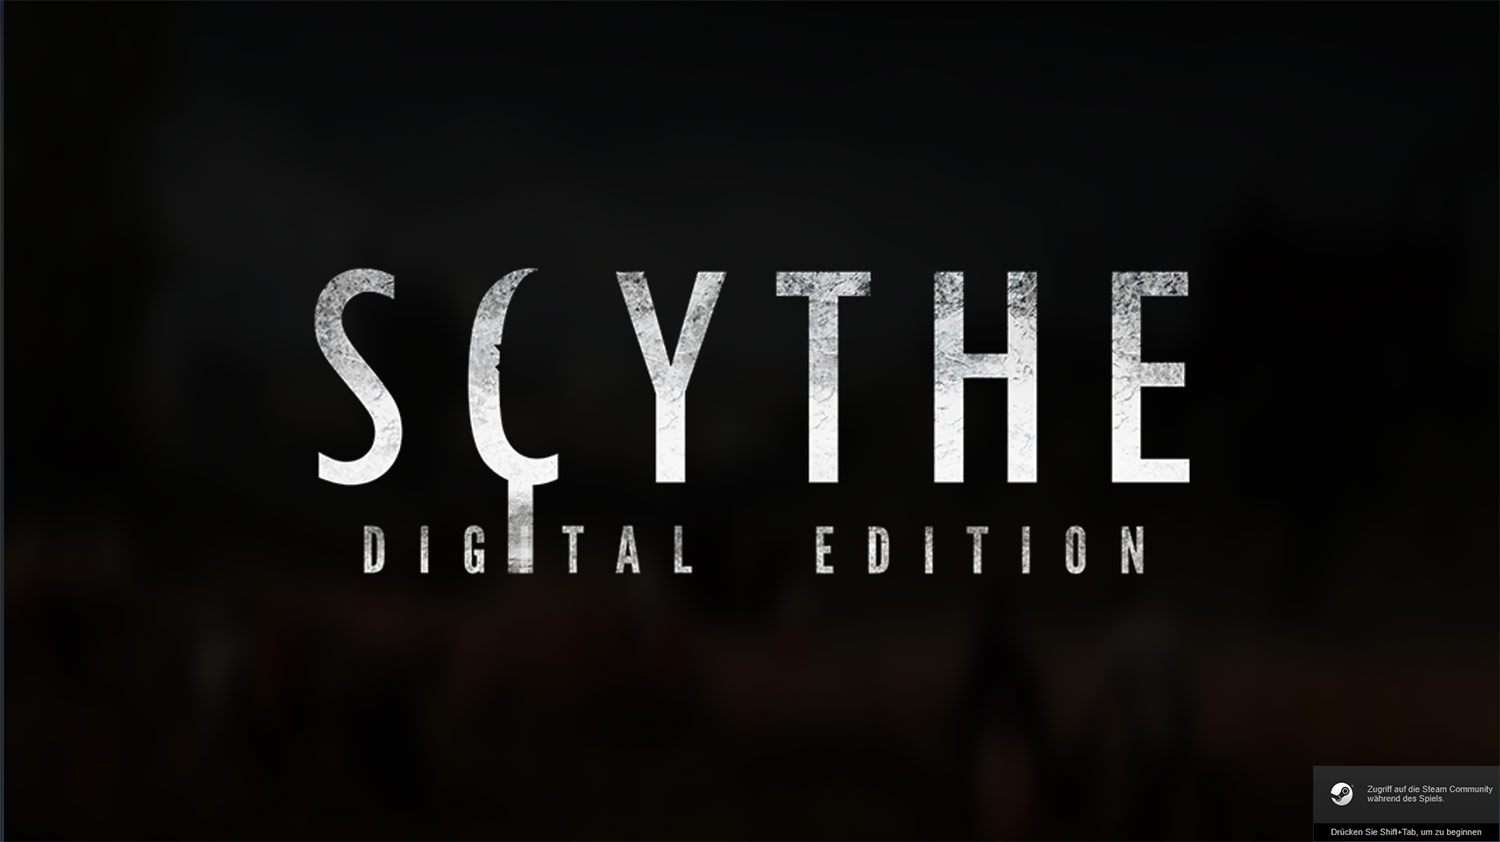 Scythe Digitale Version – erster Eindruck